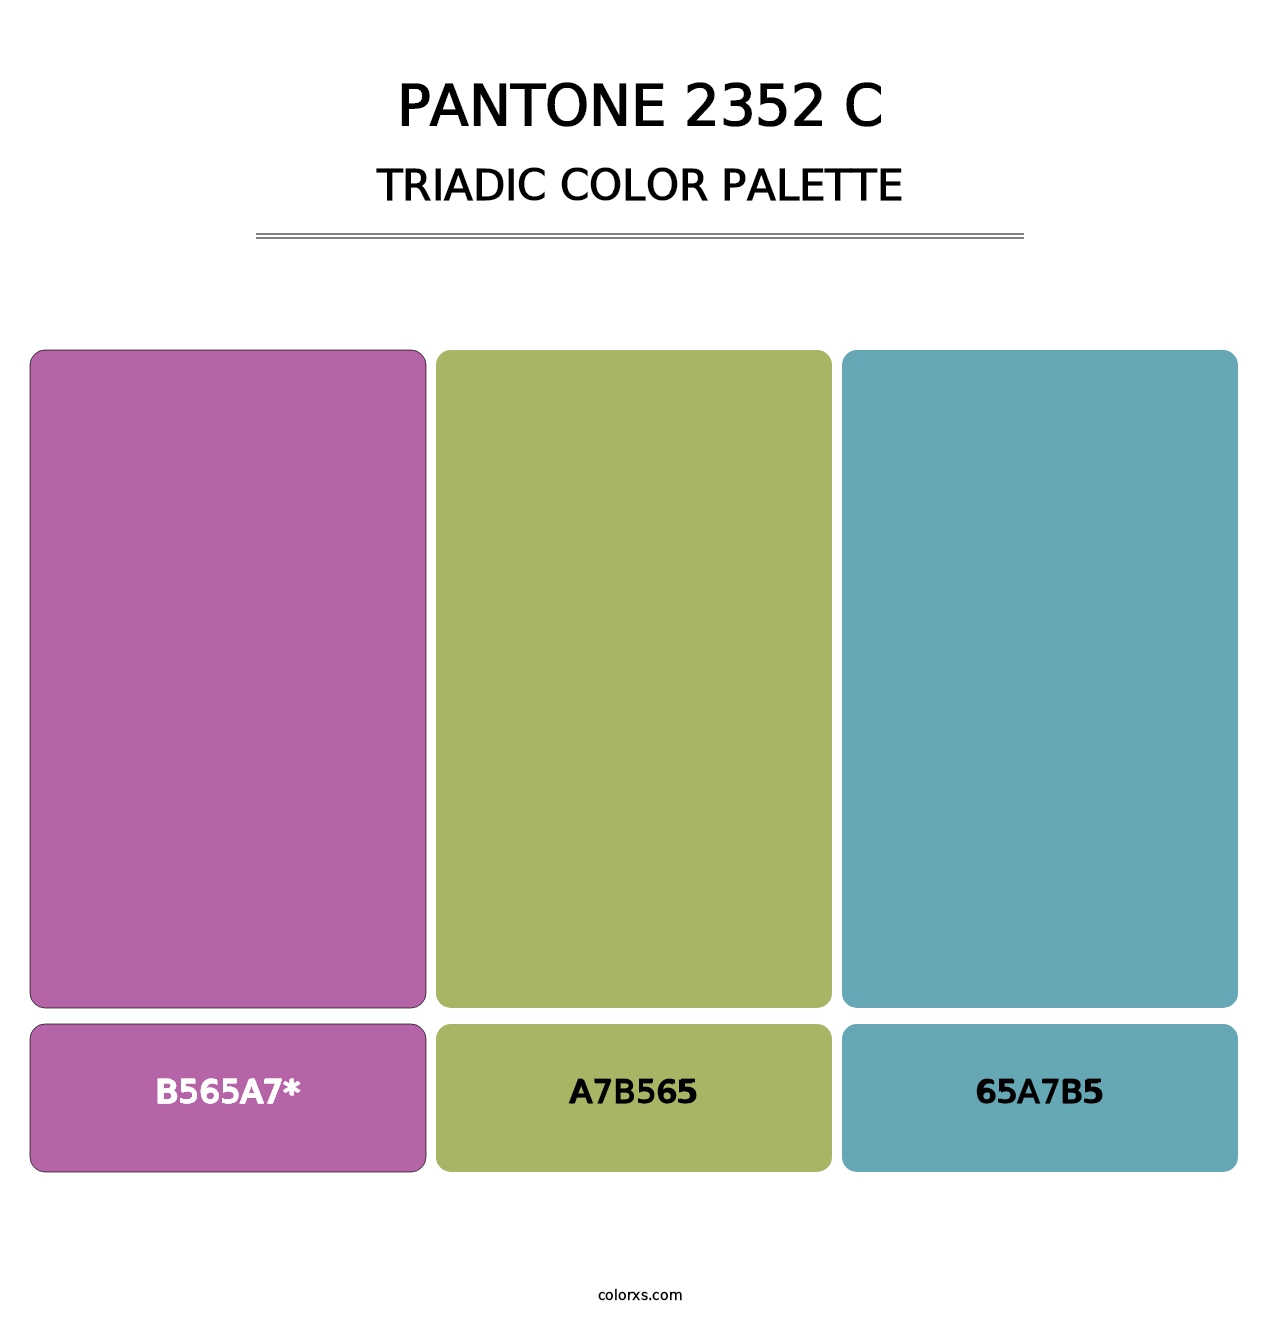 PANTONE 2352 C - Triadic Color Palette